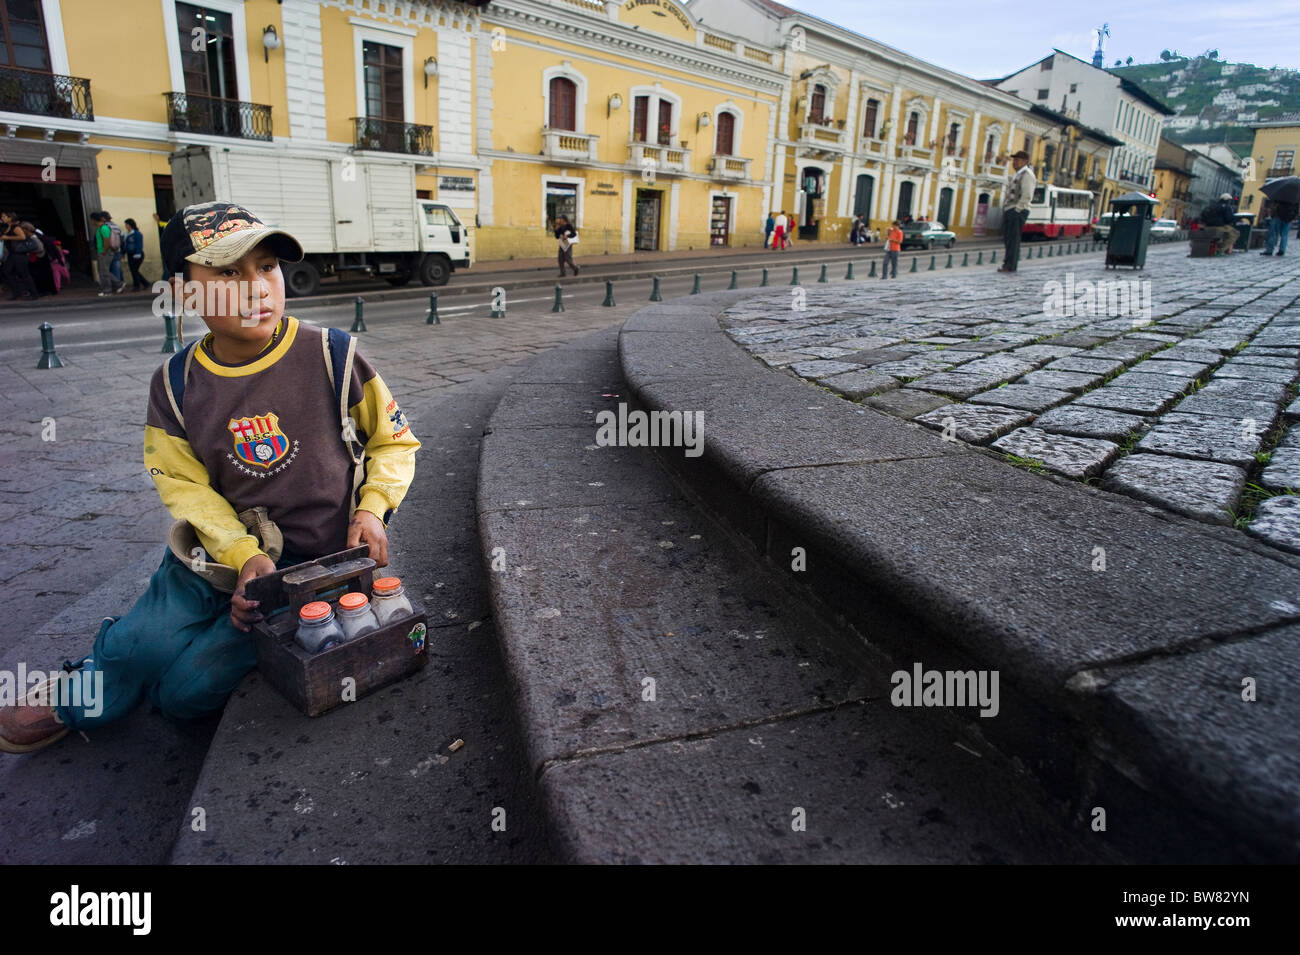 Shoeshine boy in Plaza San Francisco, Quito, Ecuador Stock Photo